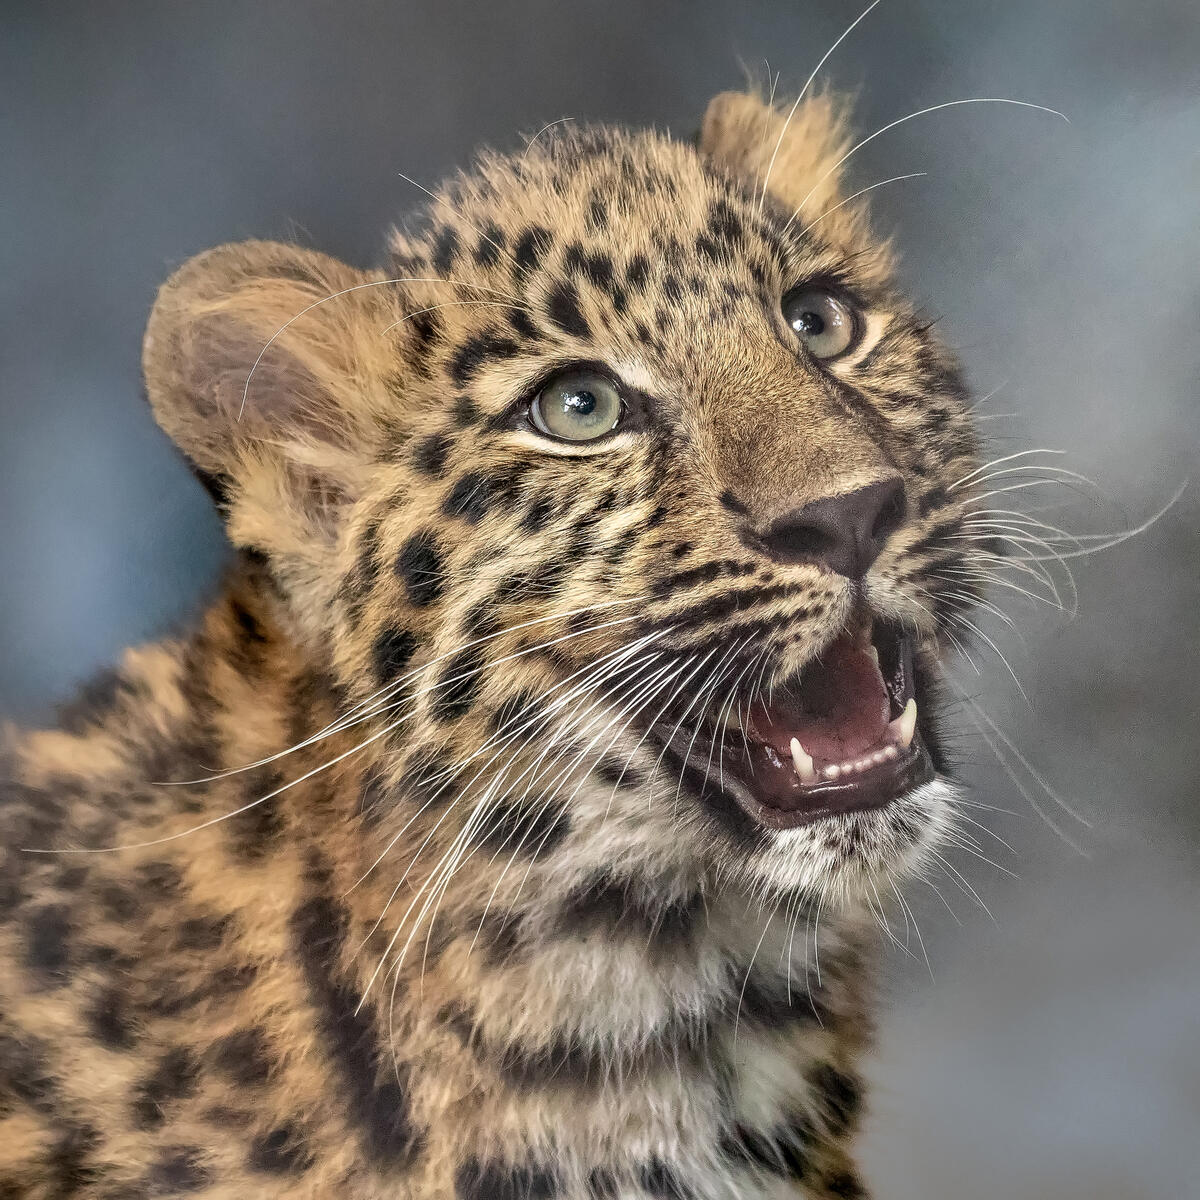 Leopard color